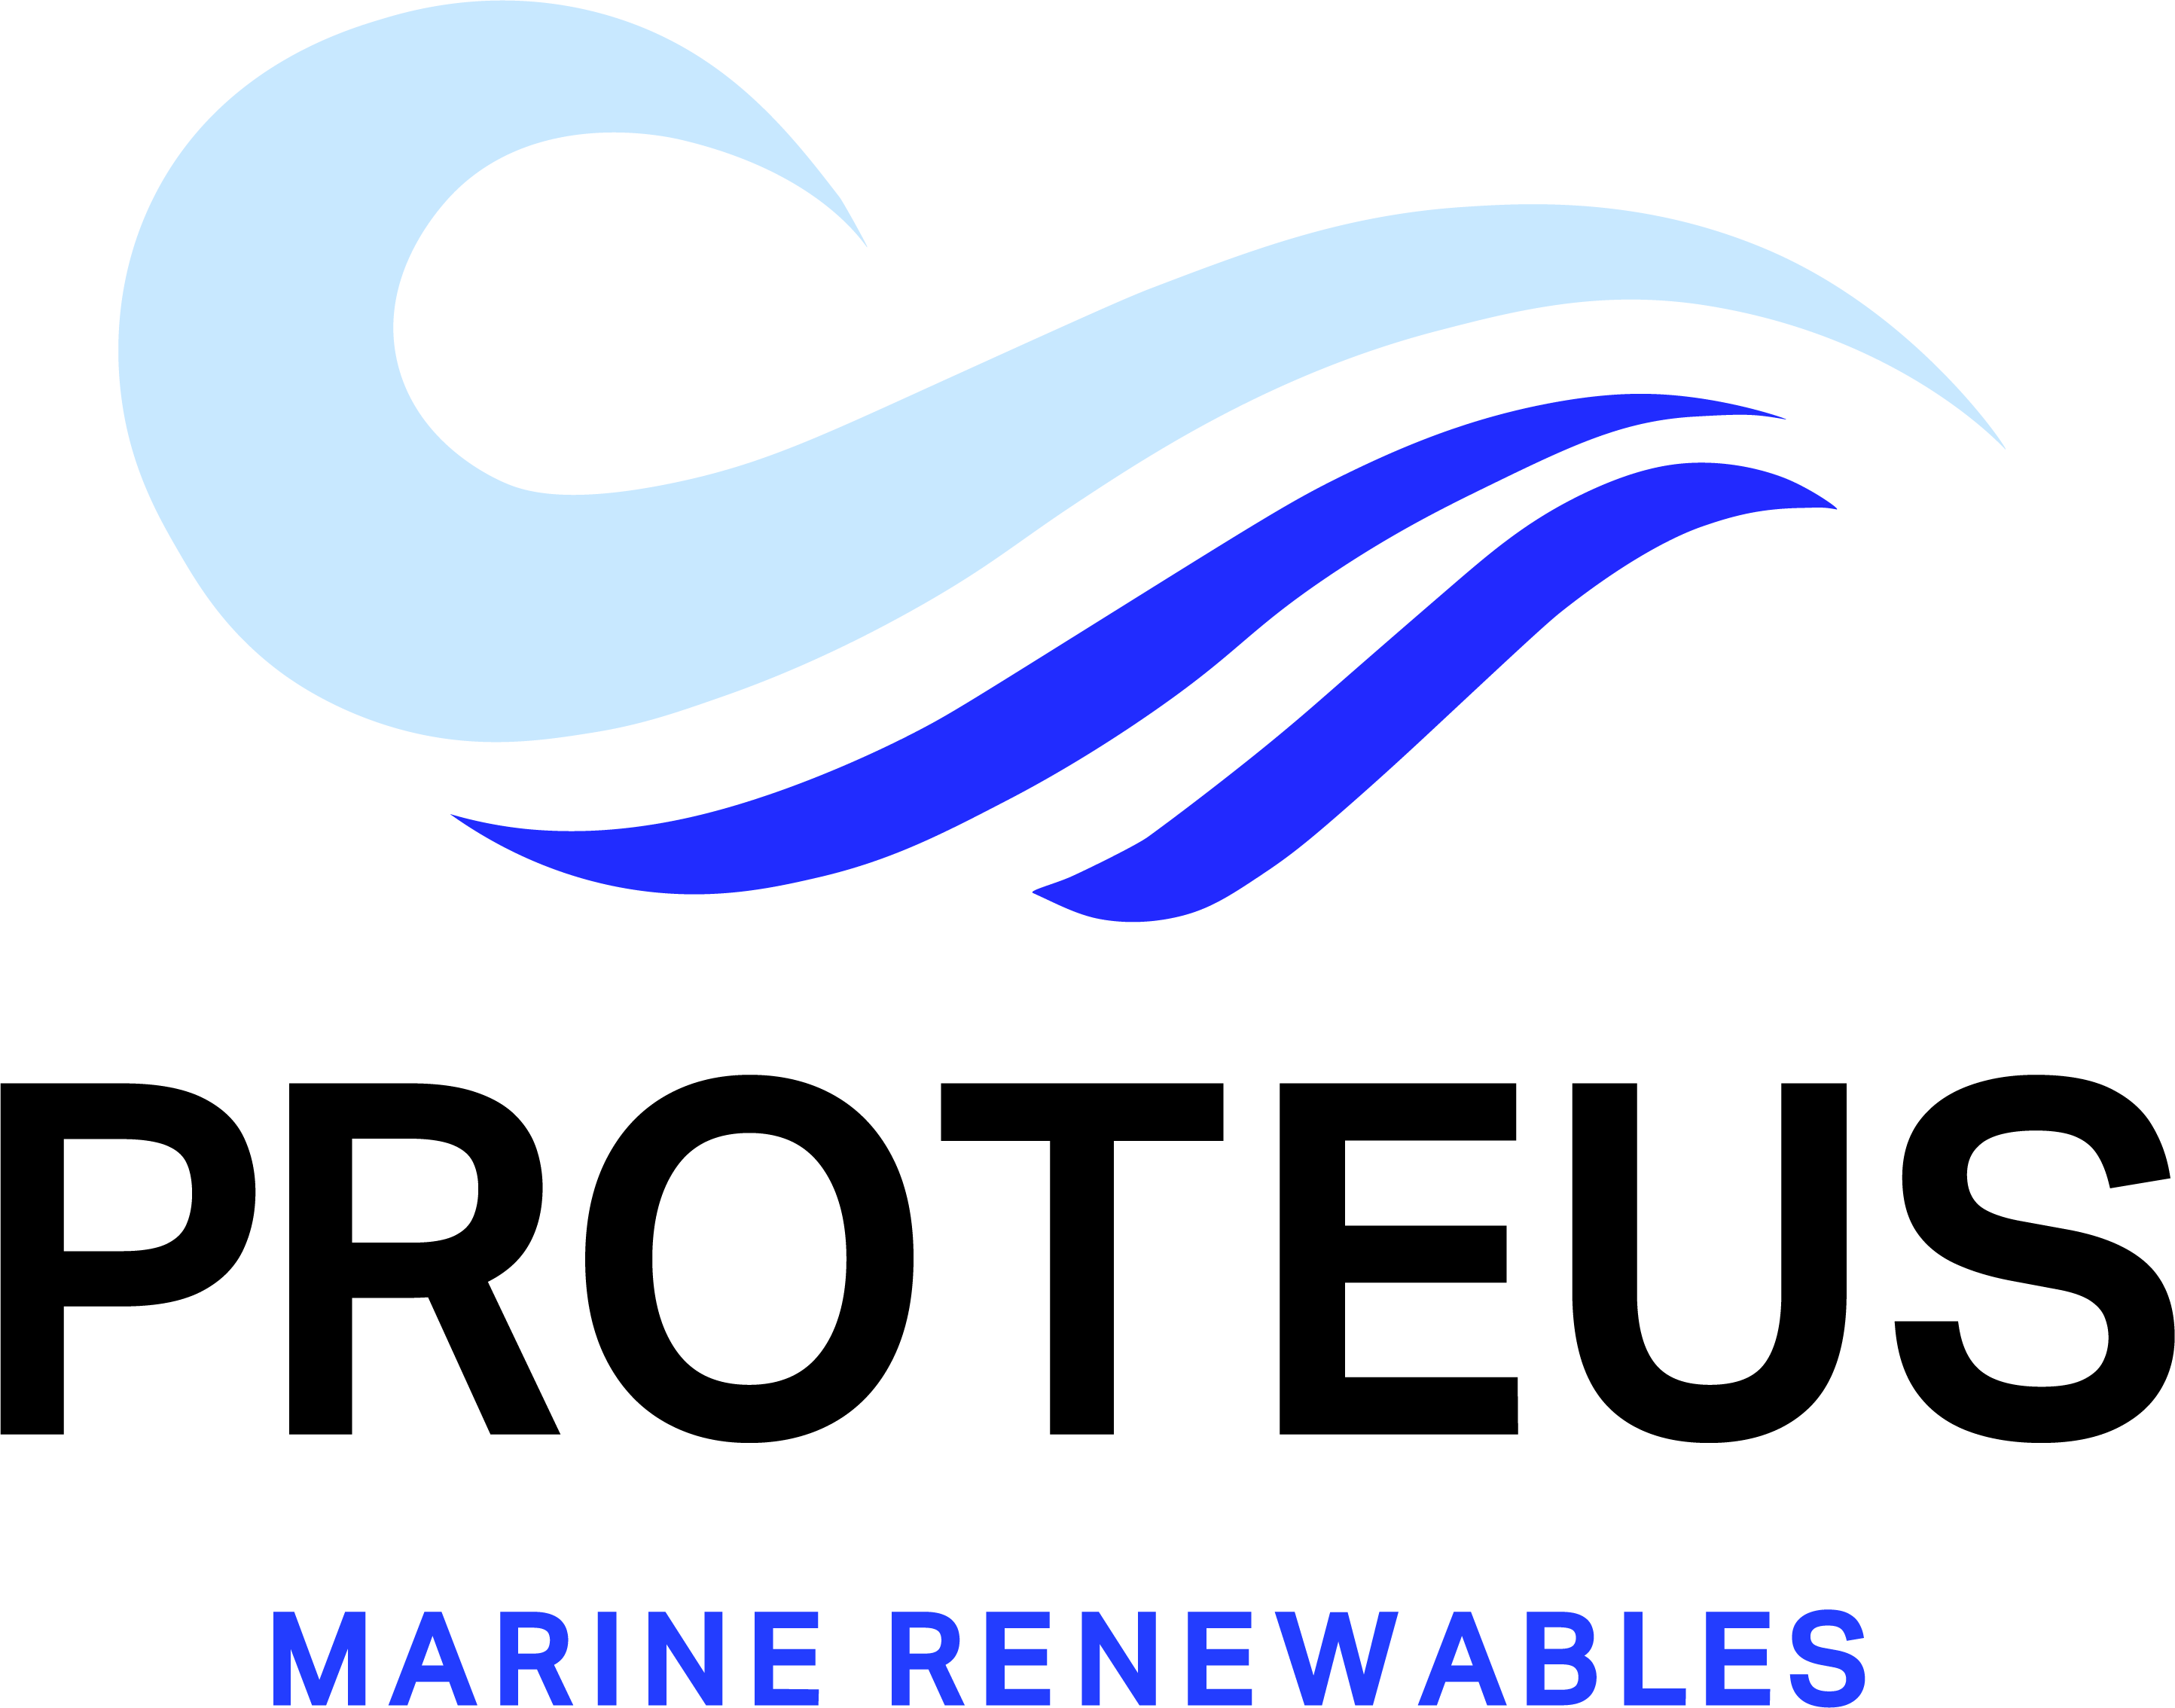 Proteus Marine Renewables